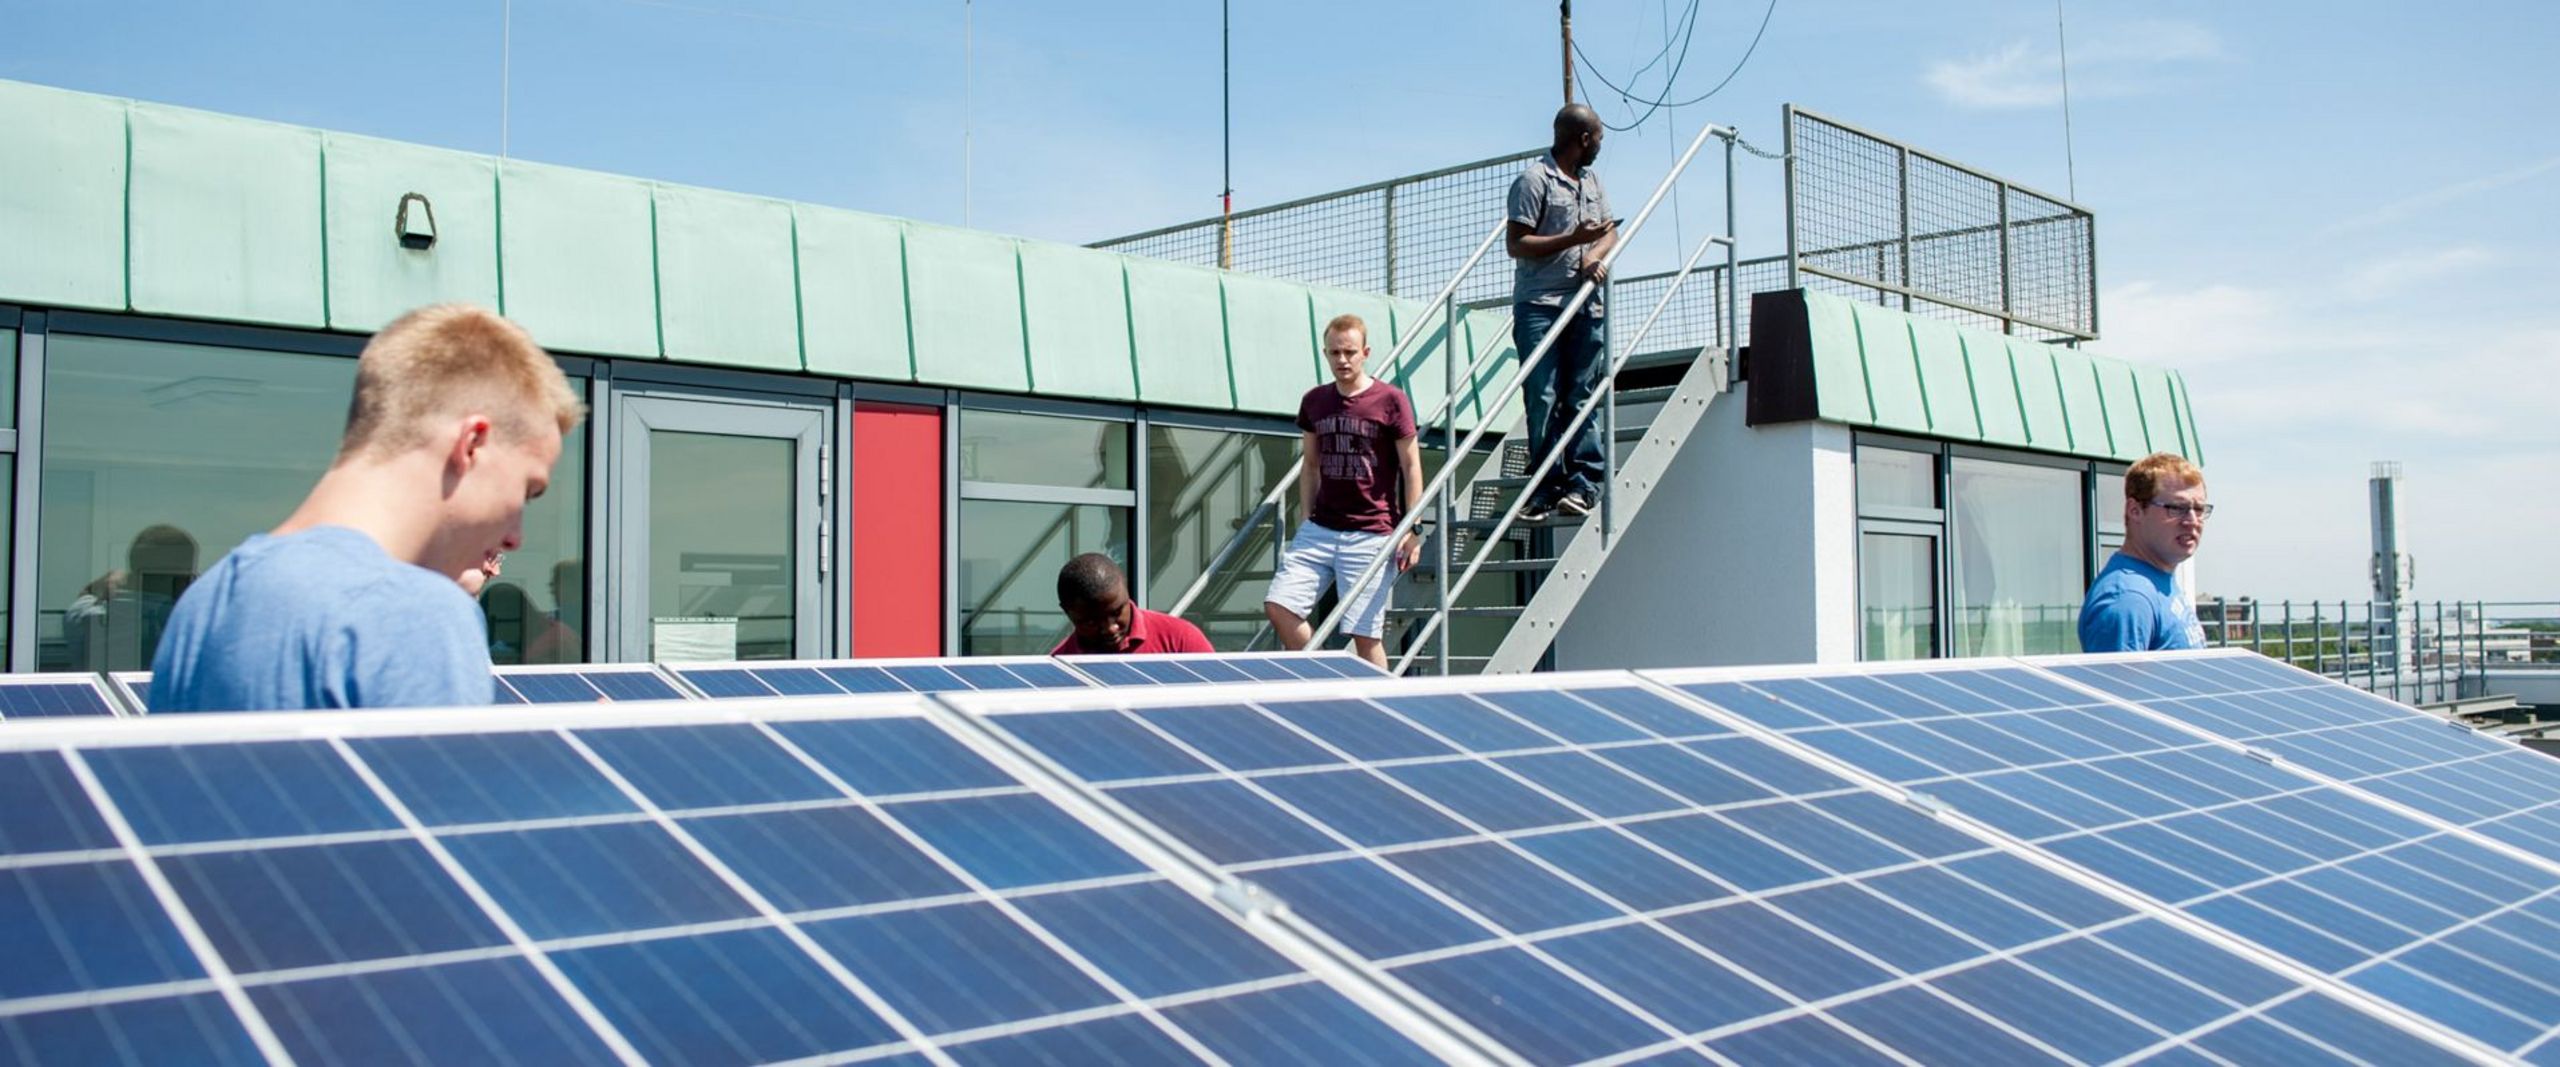 Studierende stehen auf dem Dach eines Gebäudes und betrachten eine Solaranlage.